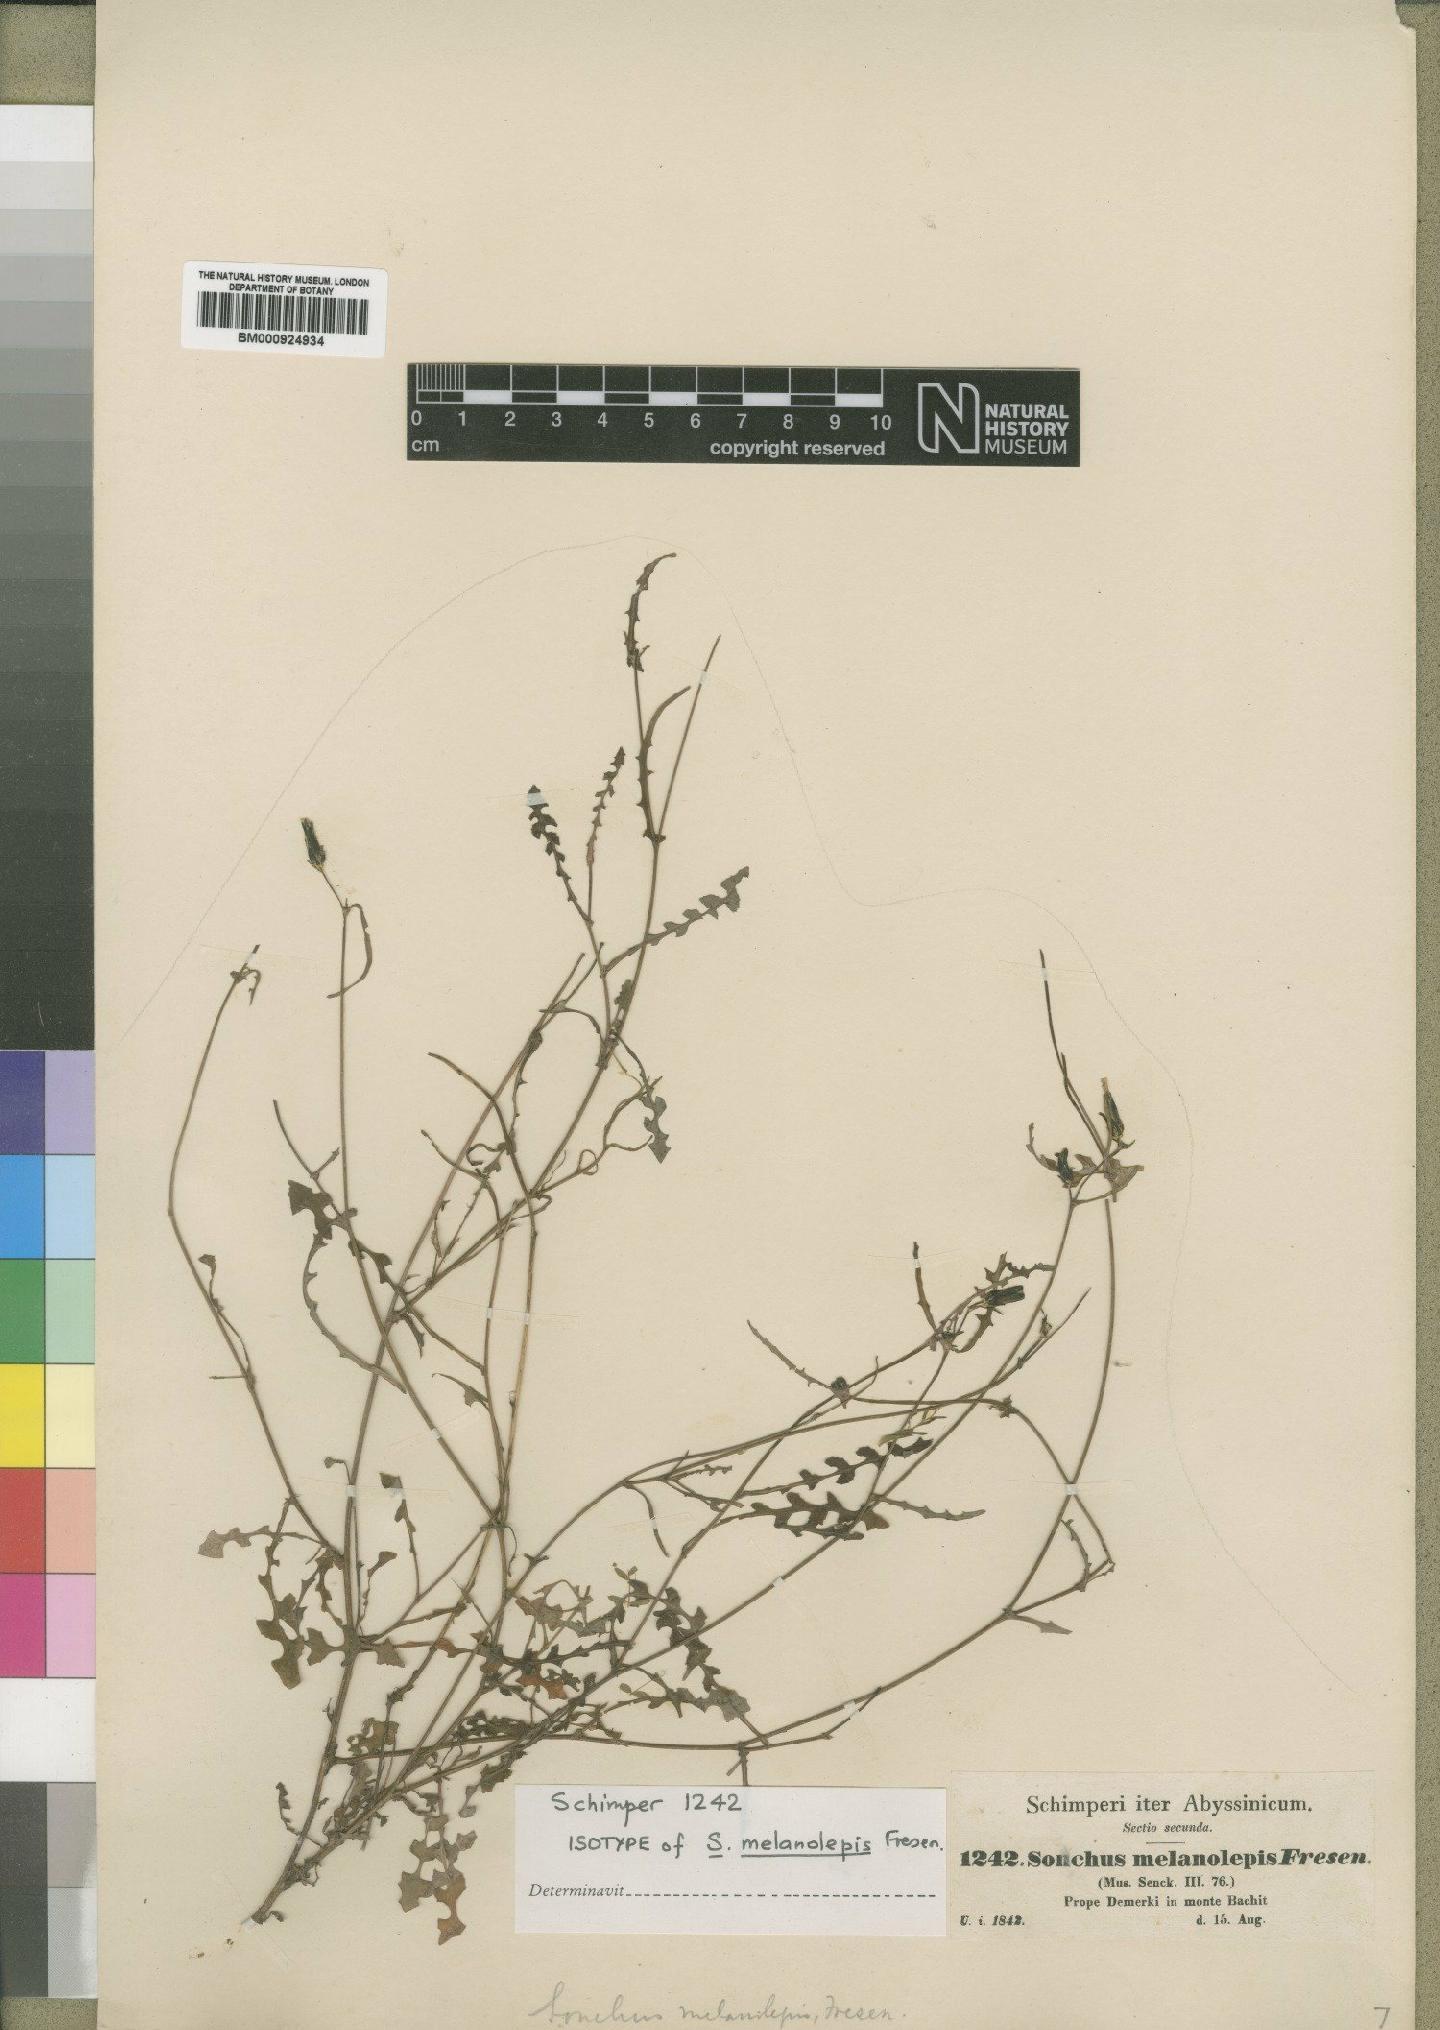 To NHMUK collection (Sonchus melanolepis Fresen.; Type; NHMUK:ecatalogue:4553830)